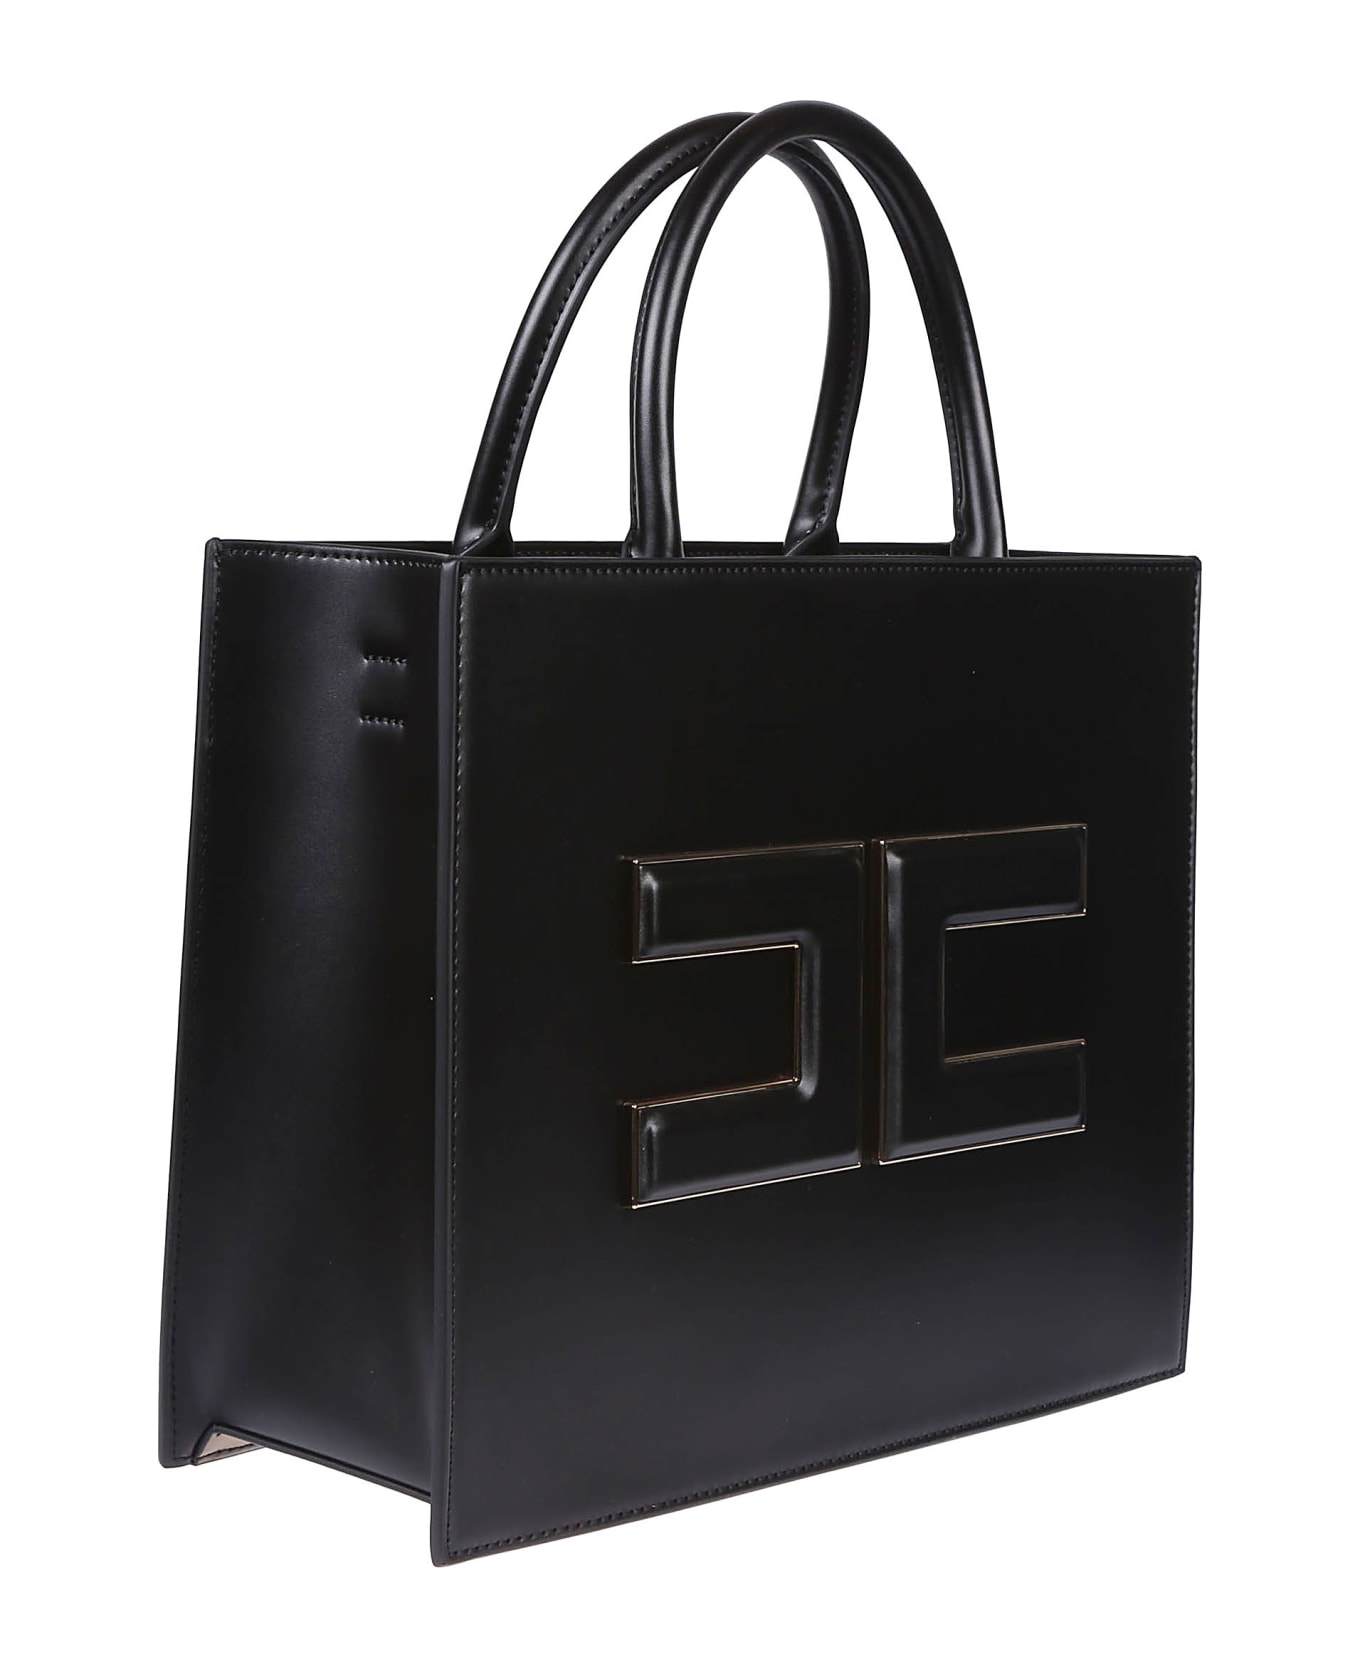 Elisabetta Franchi Medium Shopping Bag - Nero